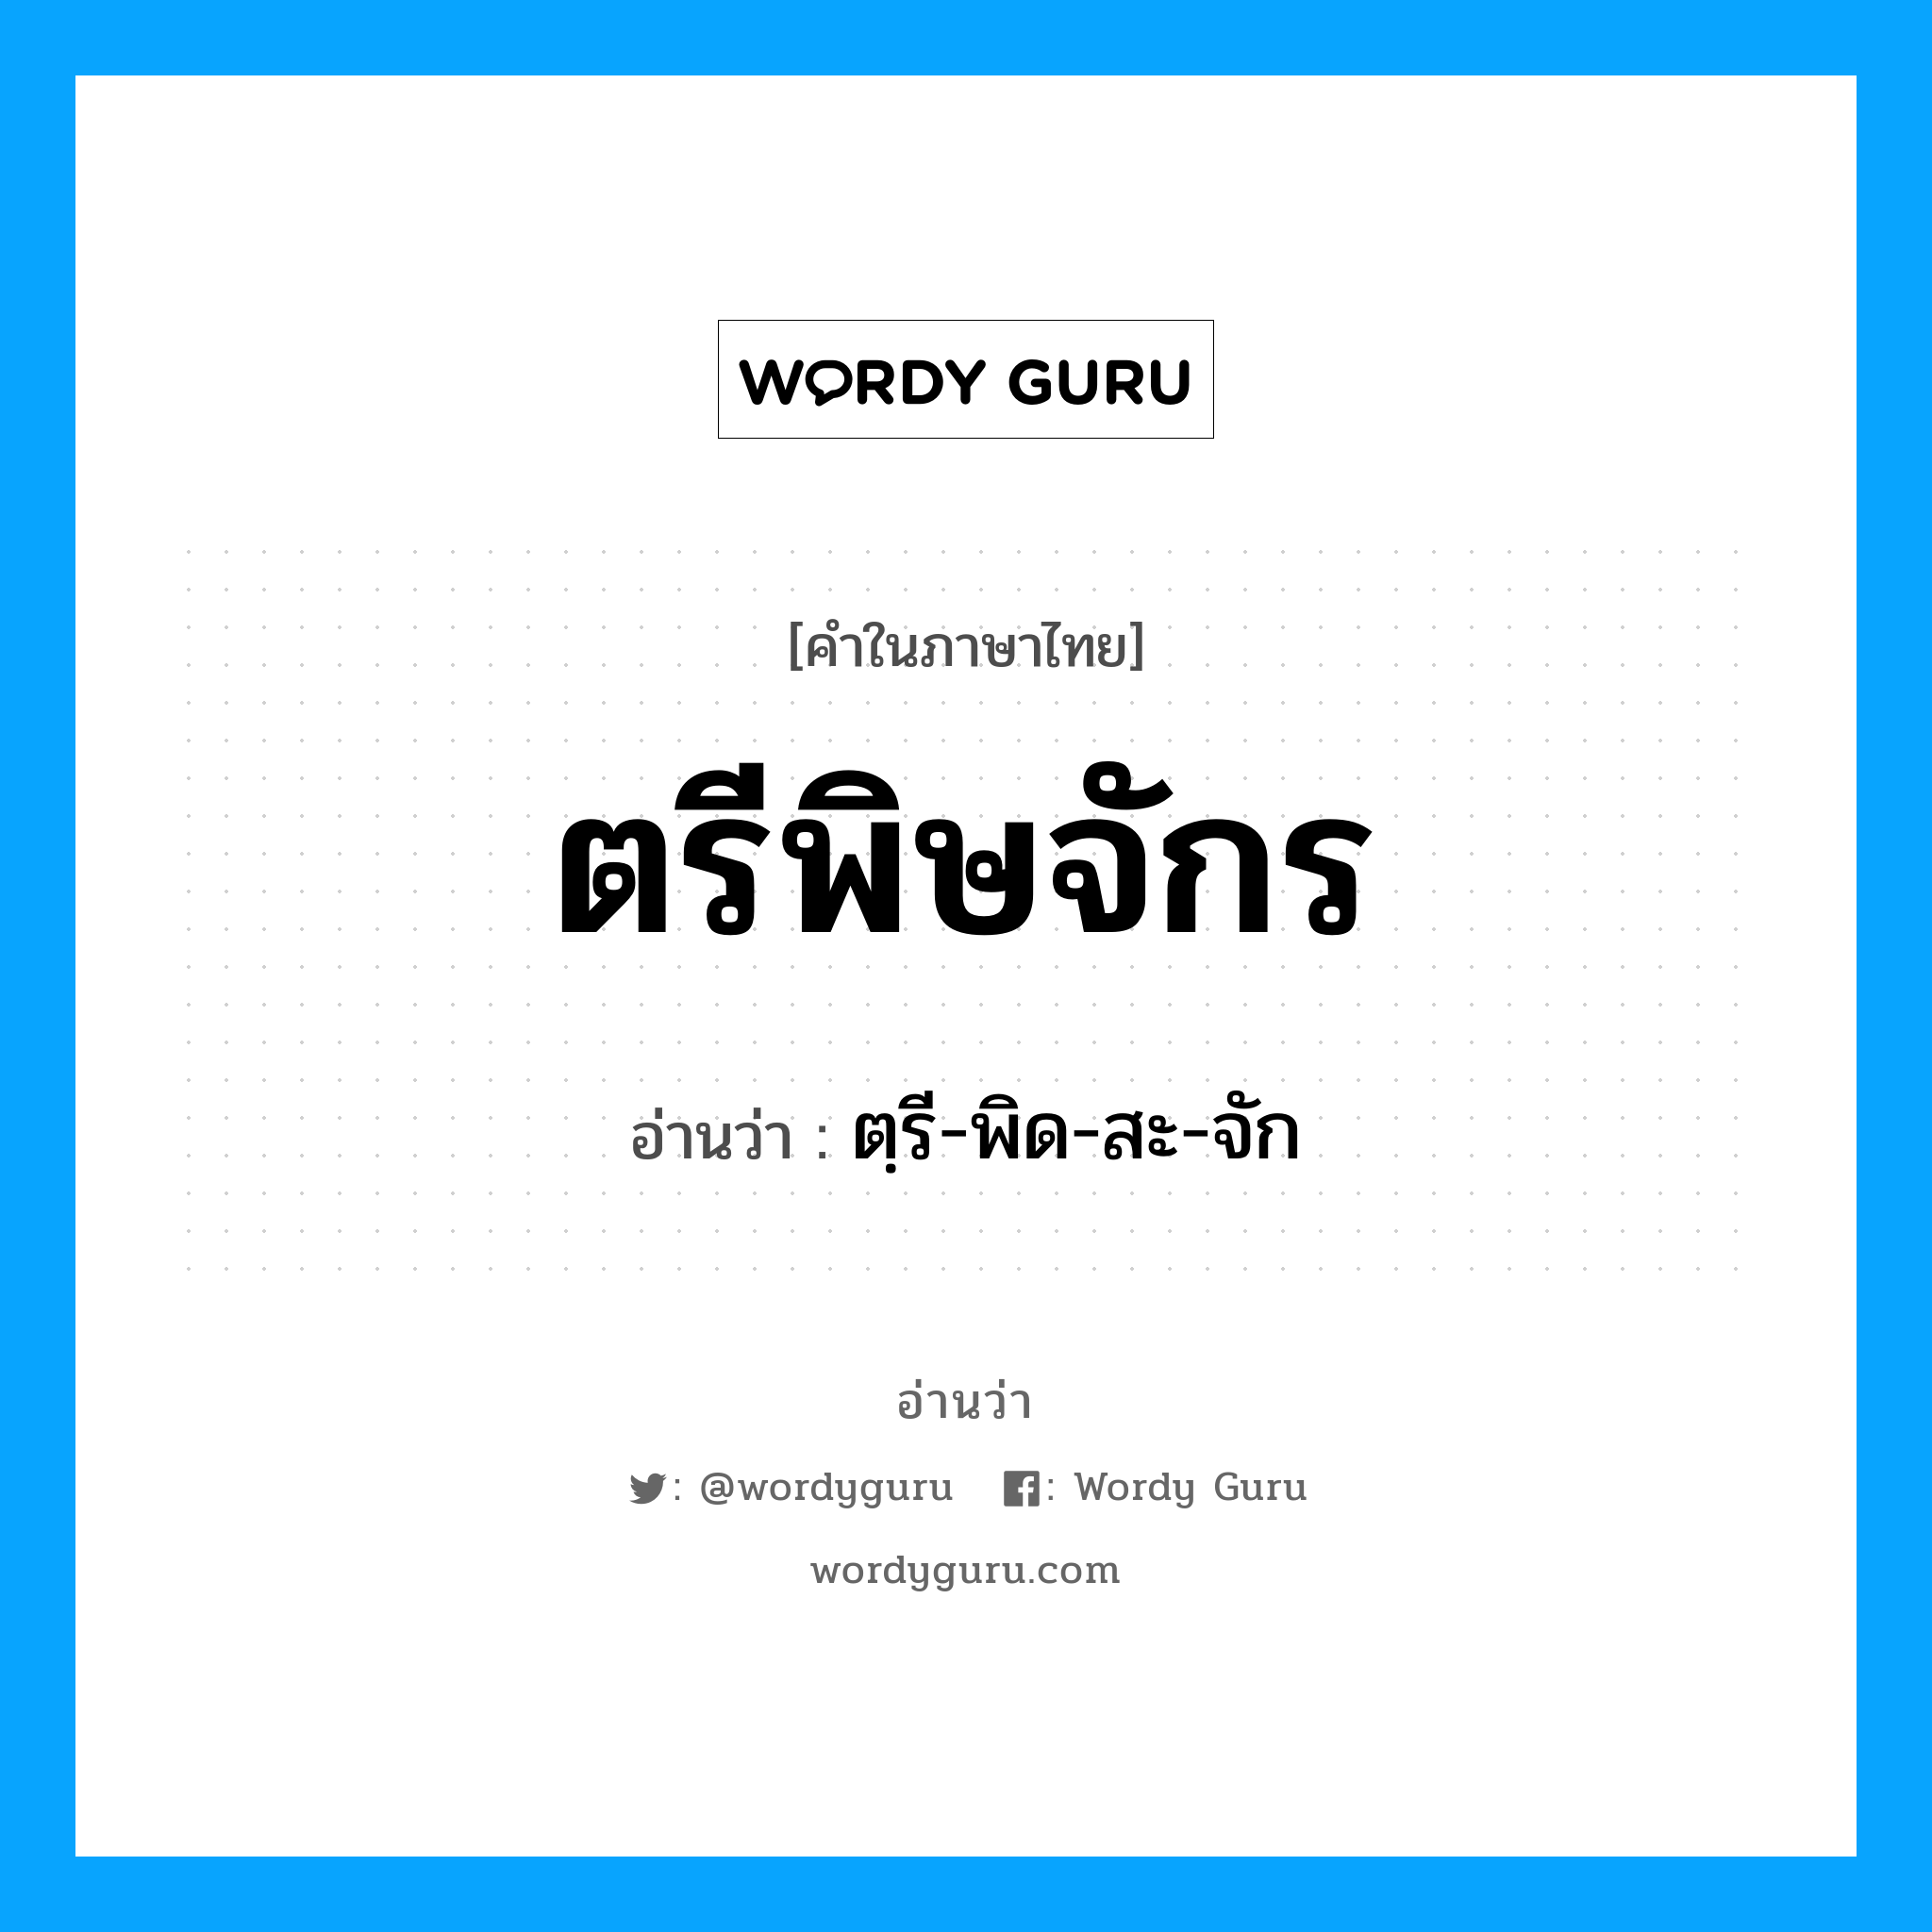 ตฺรี-พิด-สะ-จัก เป็นคำอ่านของคำไหน?, คำในภาษาไทย ตฺรี-พิด-สะ-จัก อ่านว่า ตรีพิษจักร